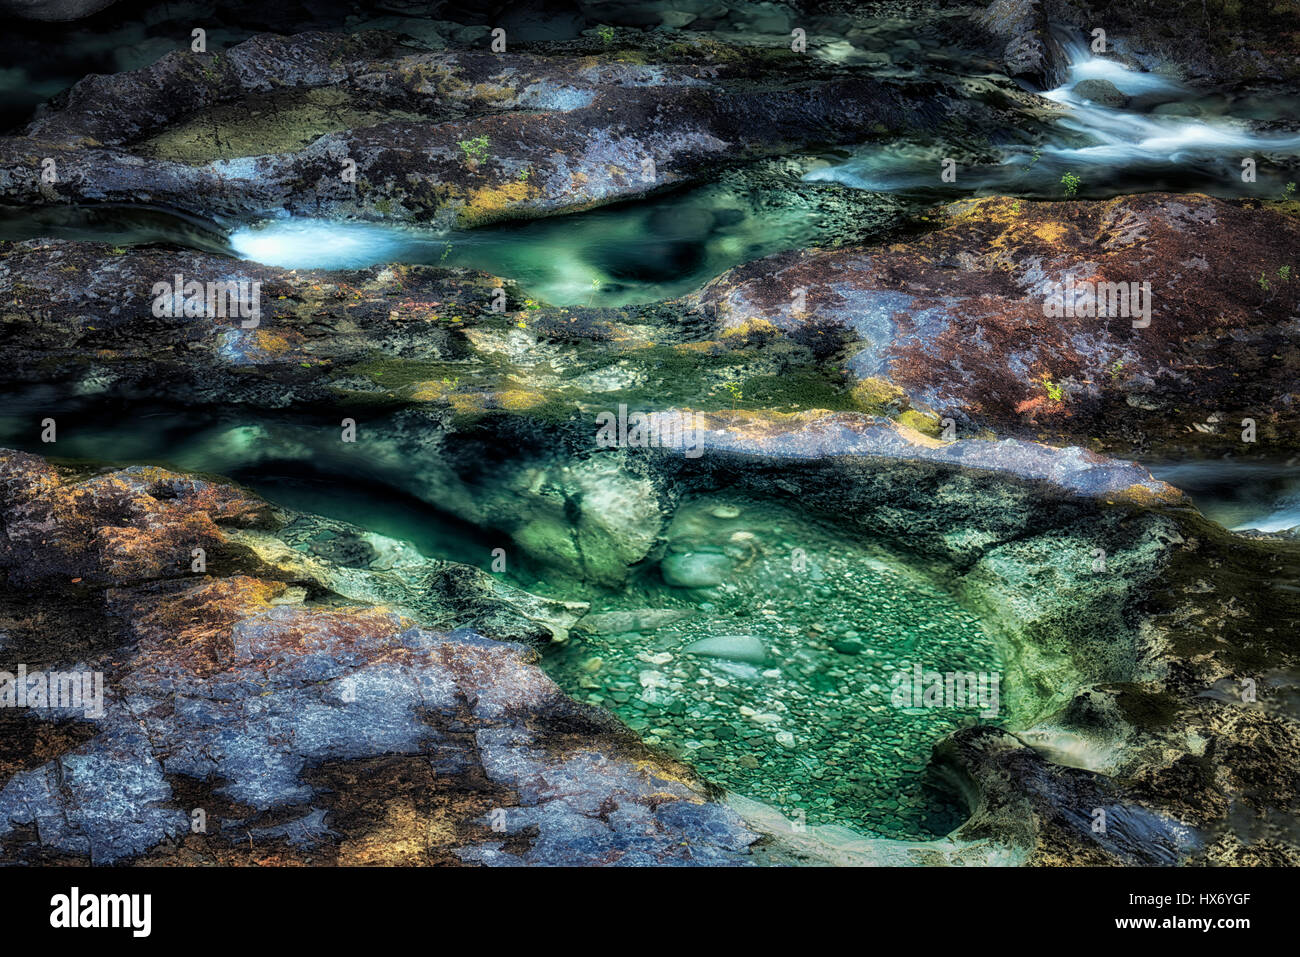 Pools in Opal Creek. Opal Creek wilderness. Willamette National Forest, Oregon Stock Photo